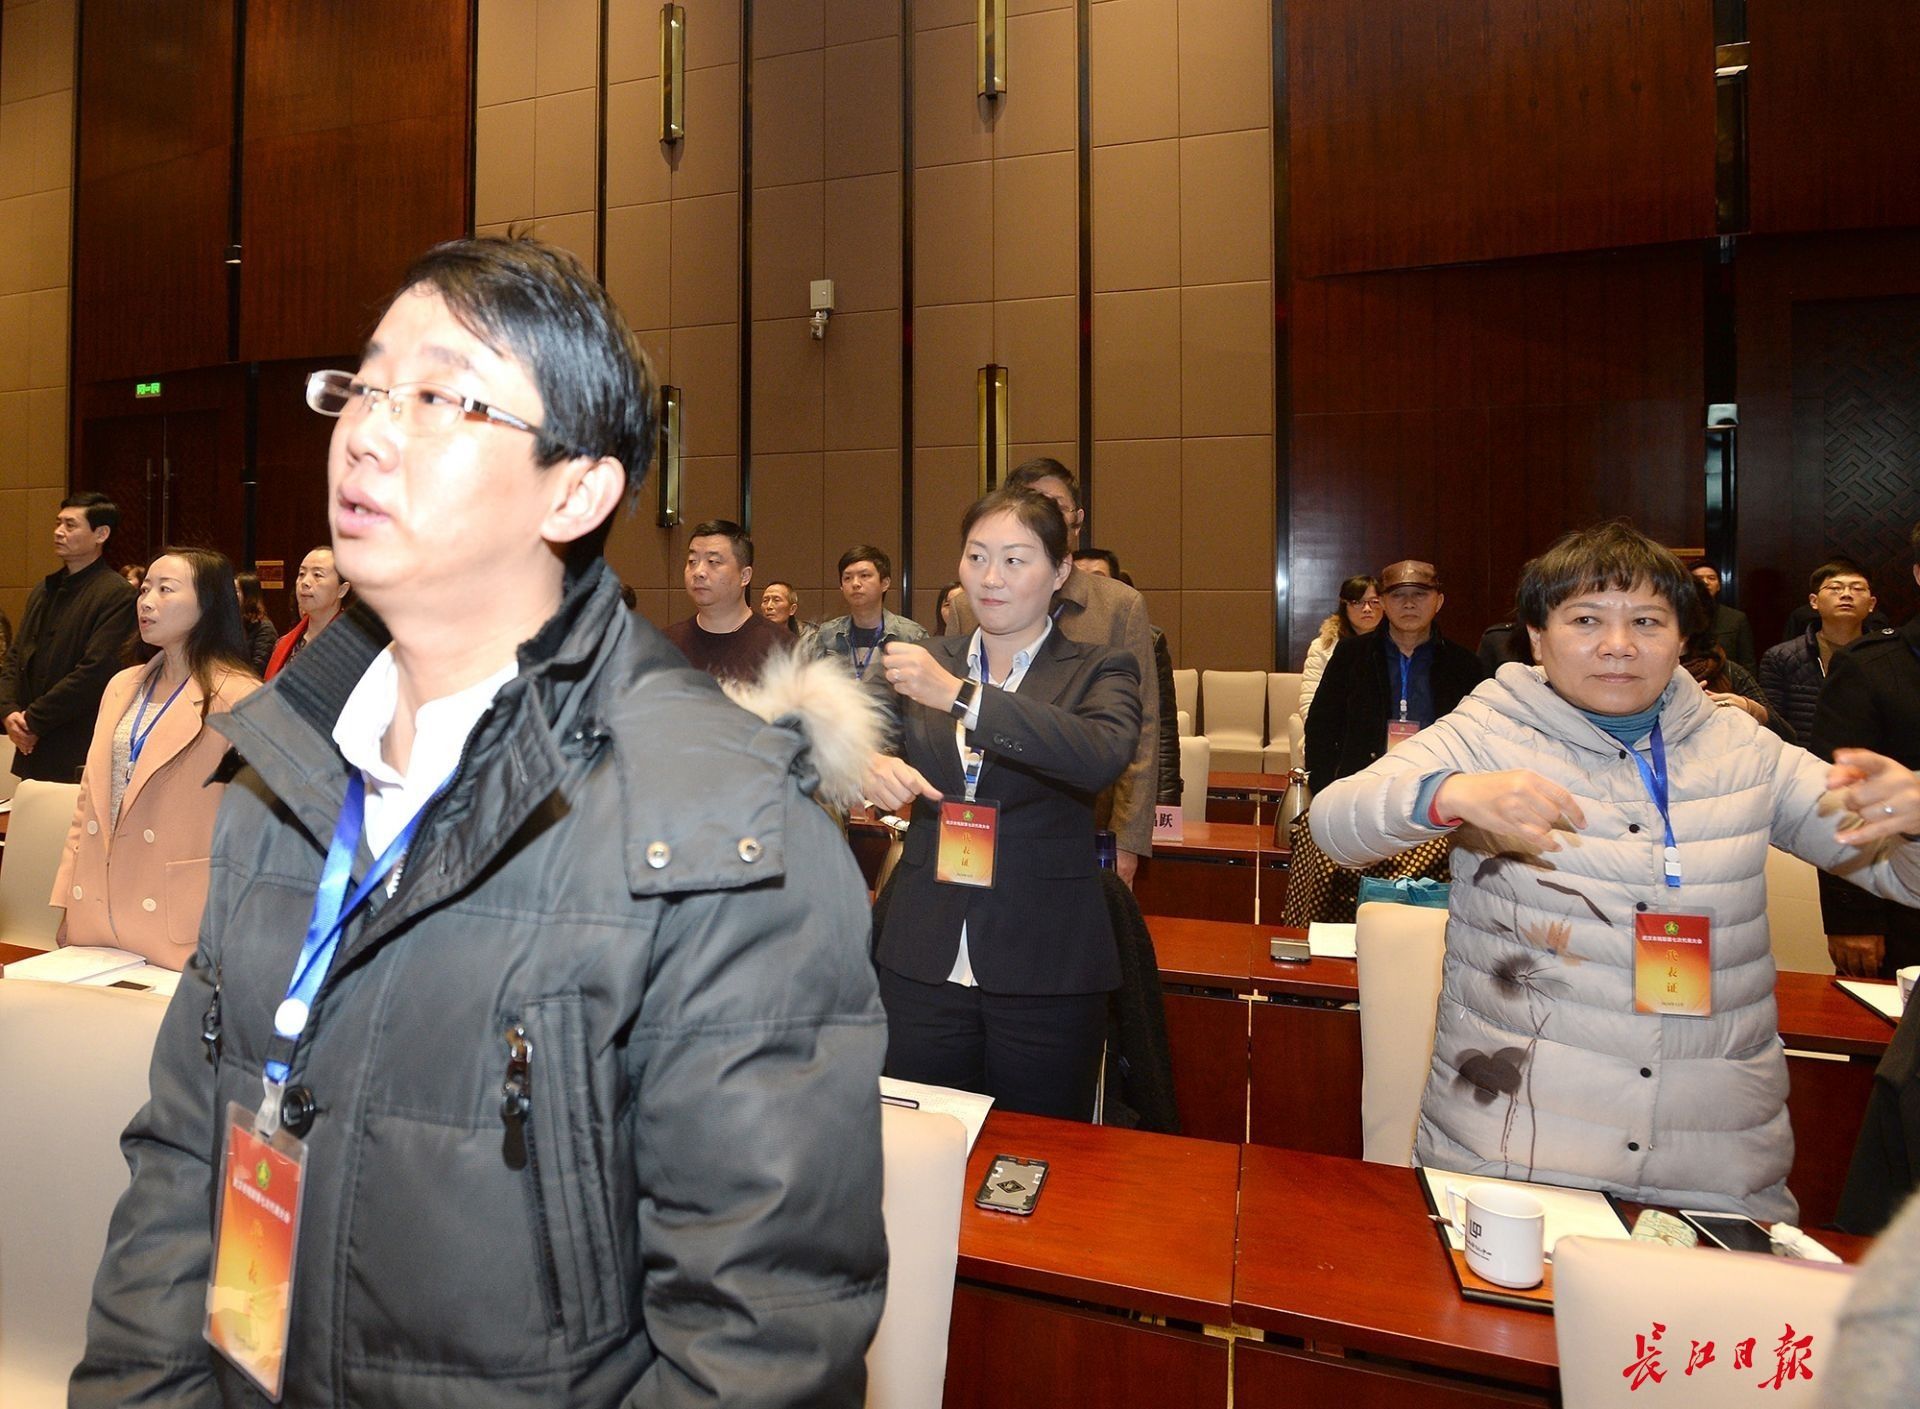 12月21日上午,武汉市残疾人联合会第七次代表大会开幕,湖北省委副书记